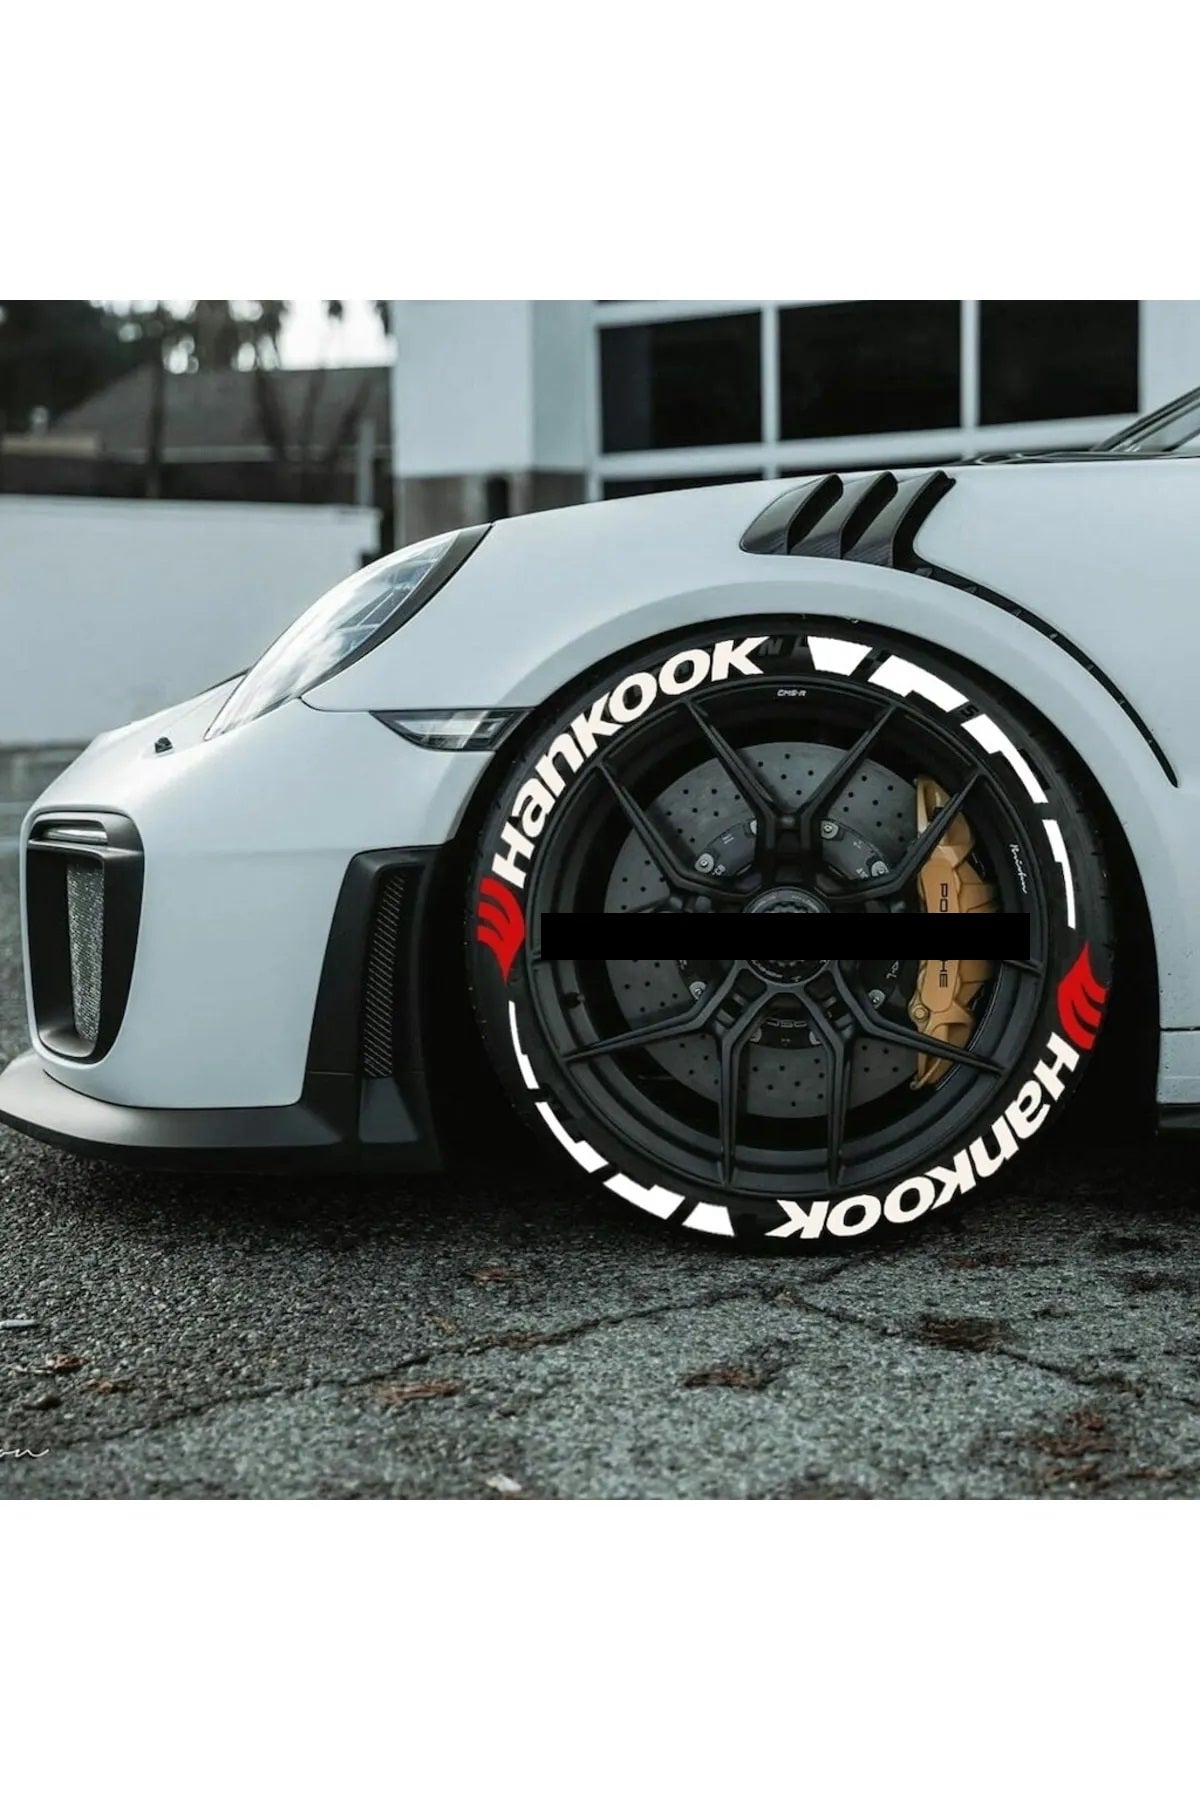 Hankook Tire Letters,Hankook TIRE STICKERS | Tire lettering Hankook Car Tire Sticker